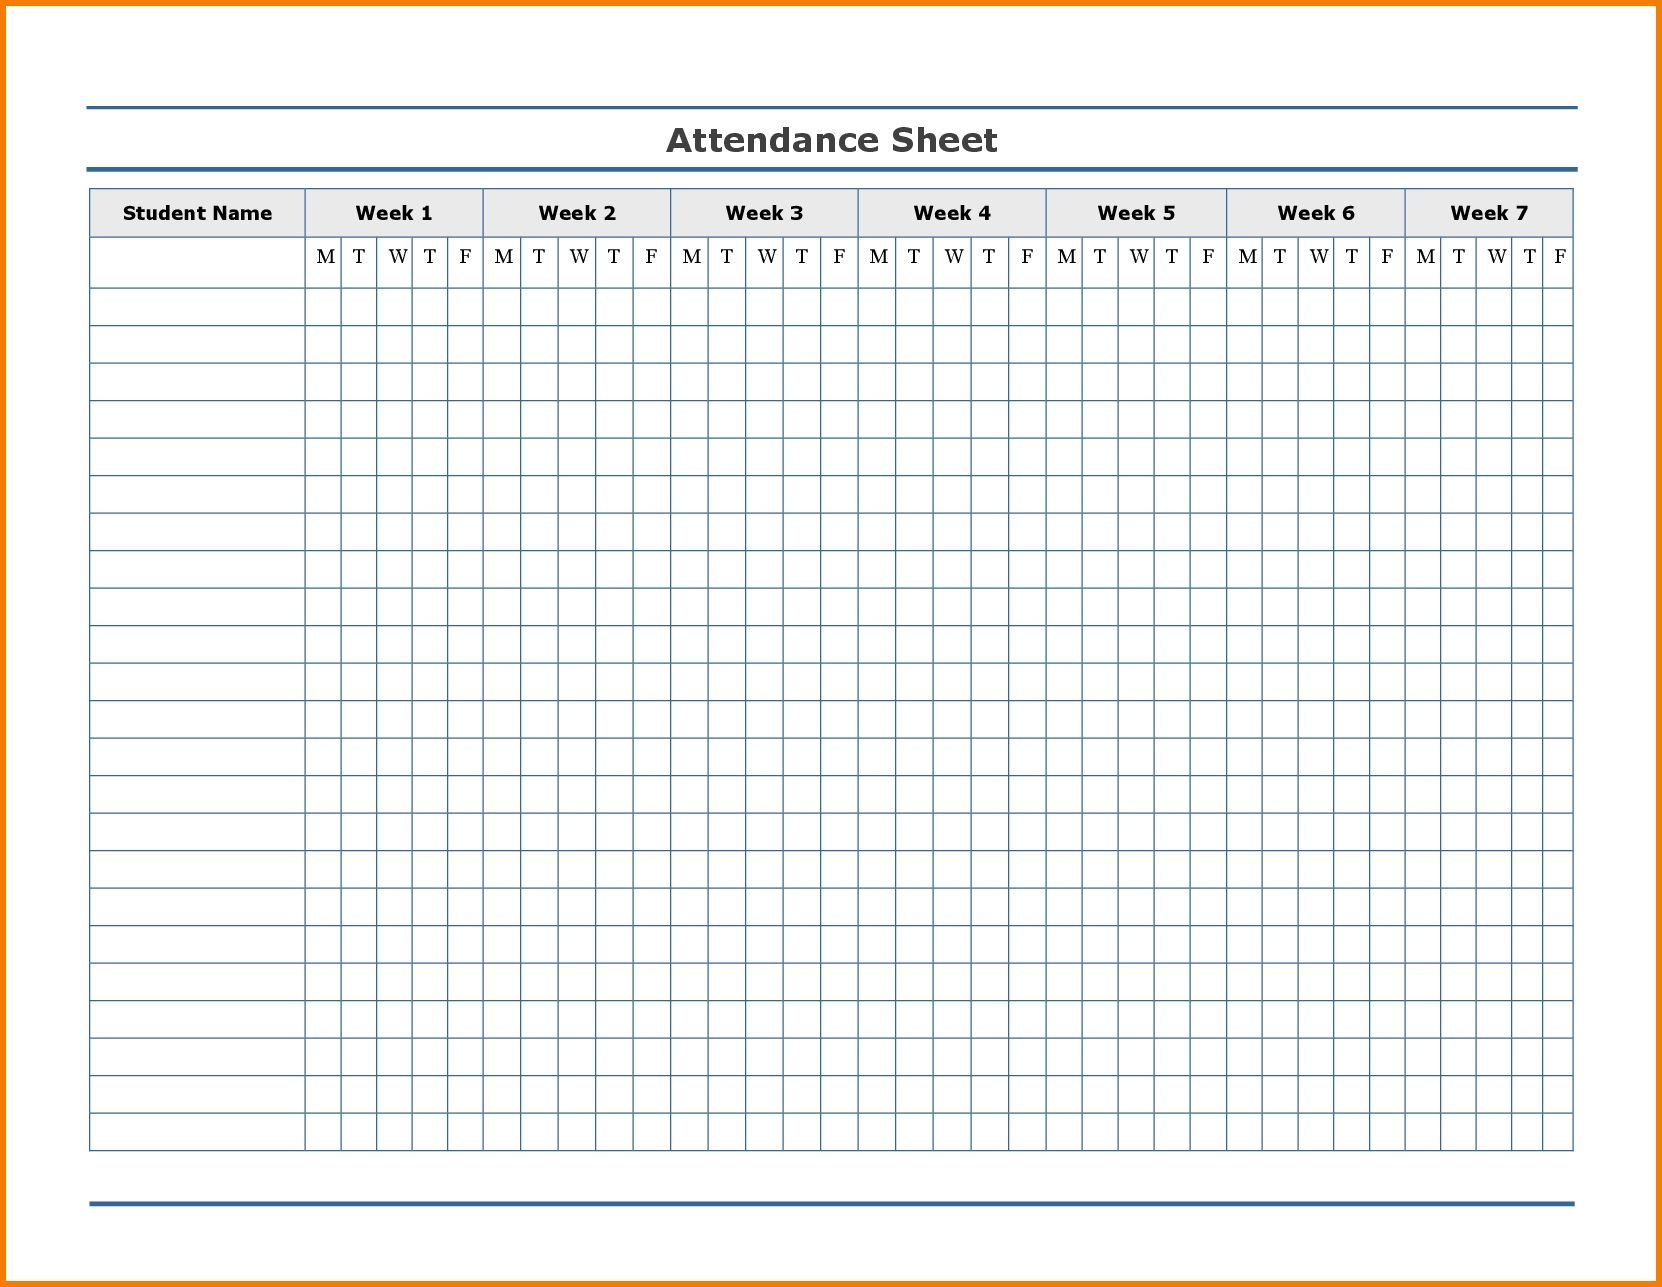 Free Employee Attendance Calendar | Employee Tracker with regard to 2020 Employee Attendance Calendar